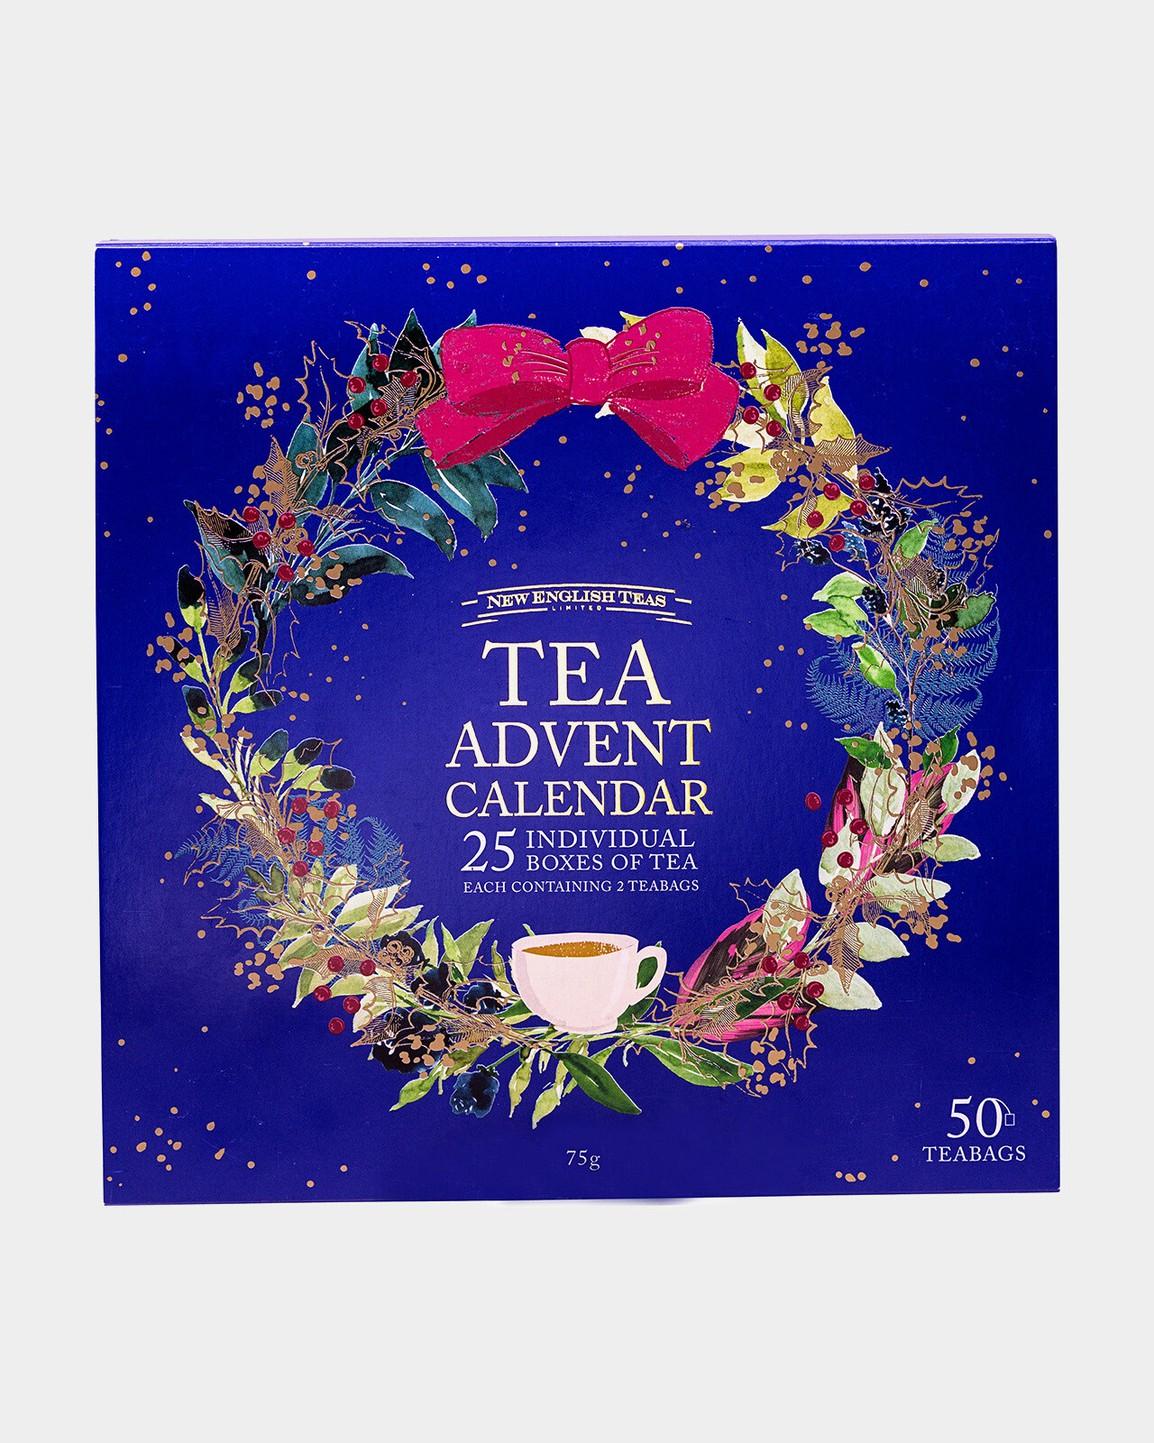 Advendikalender Tea Advent Calendar, 75g